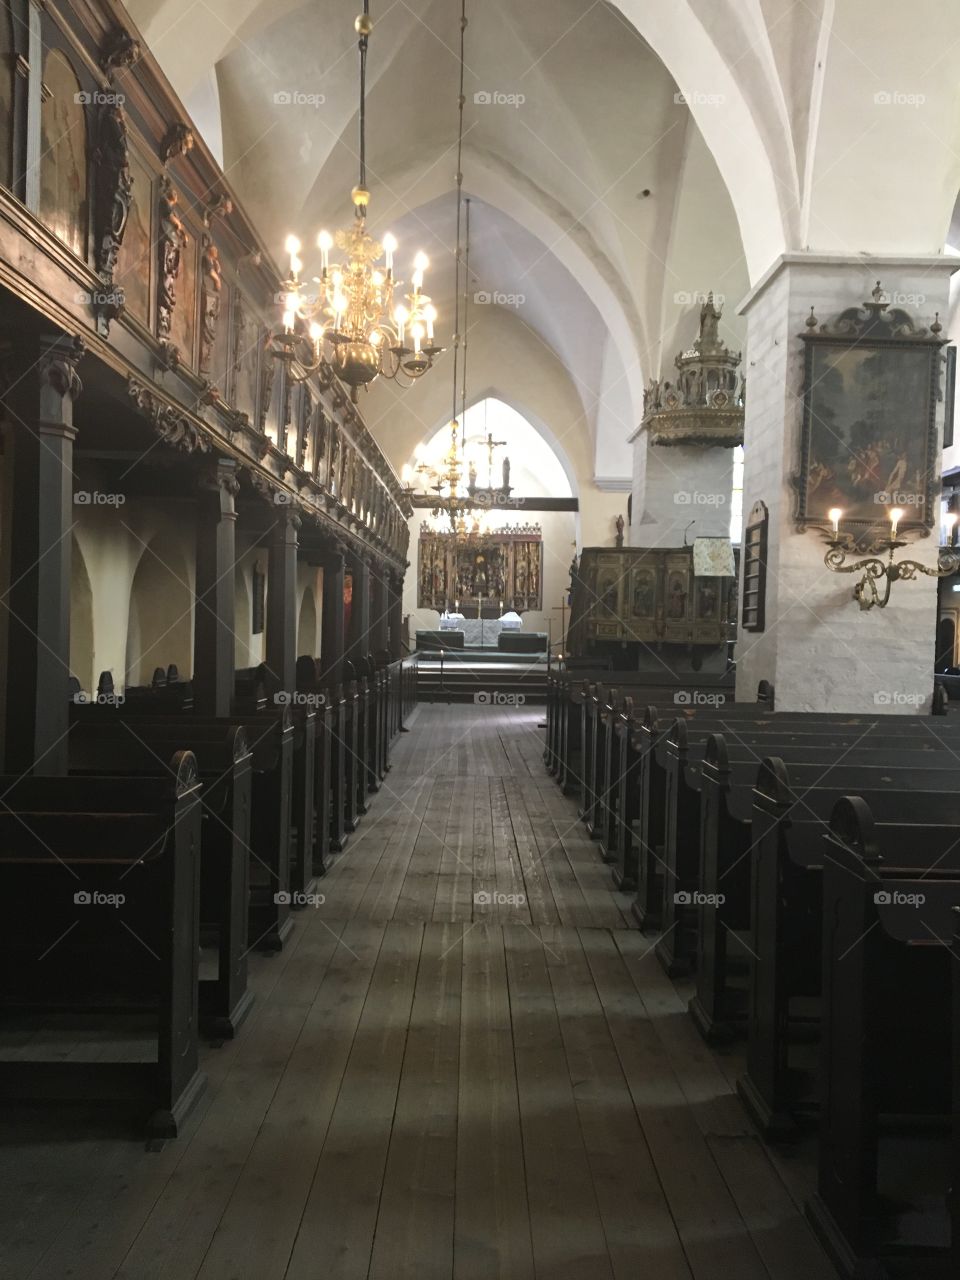 Tallinn church 